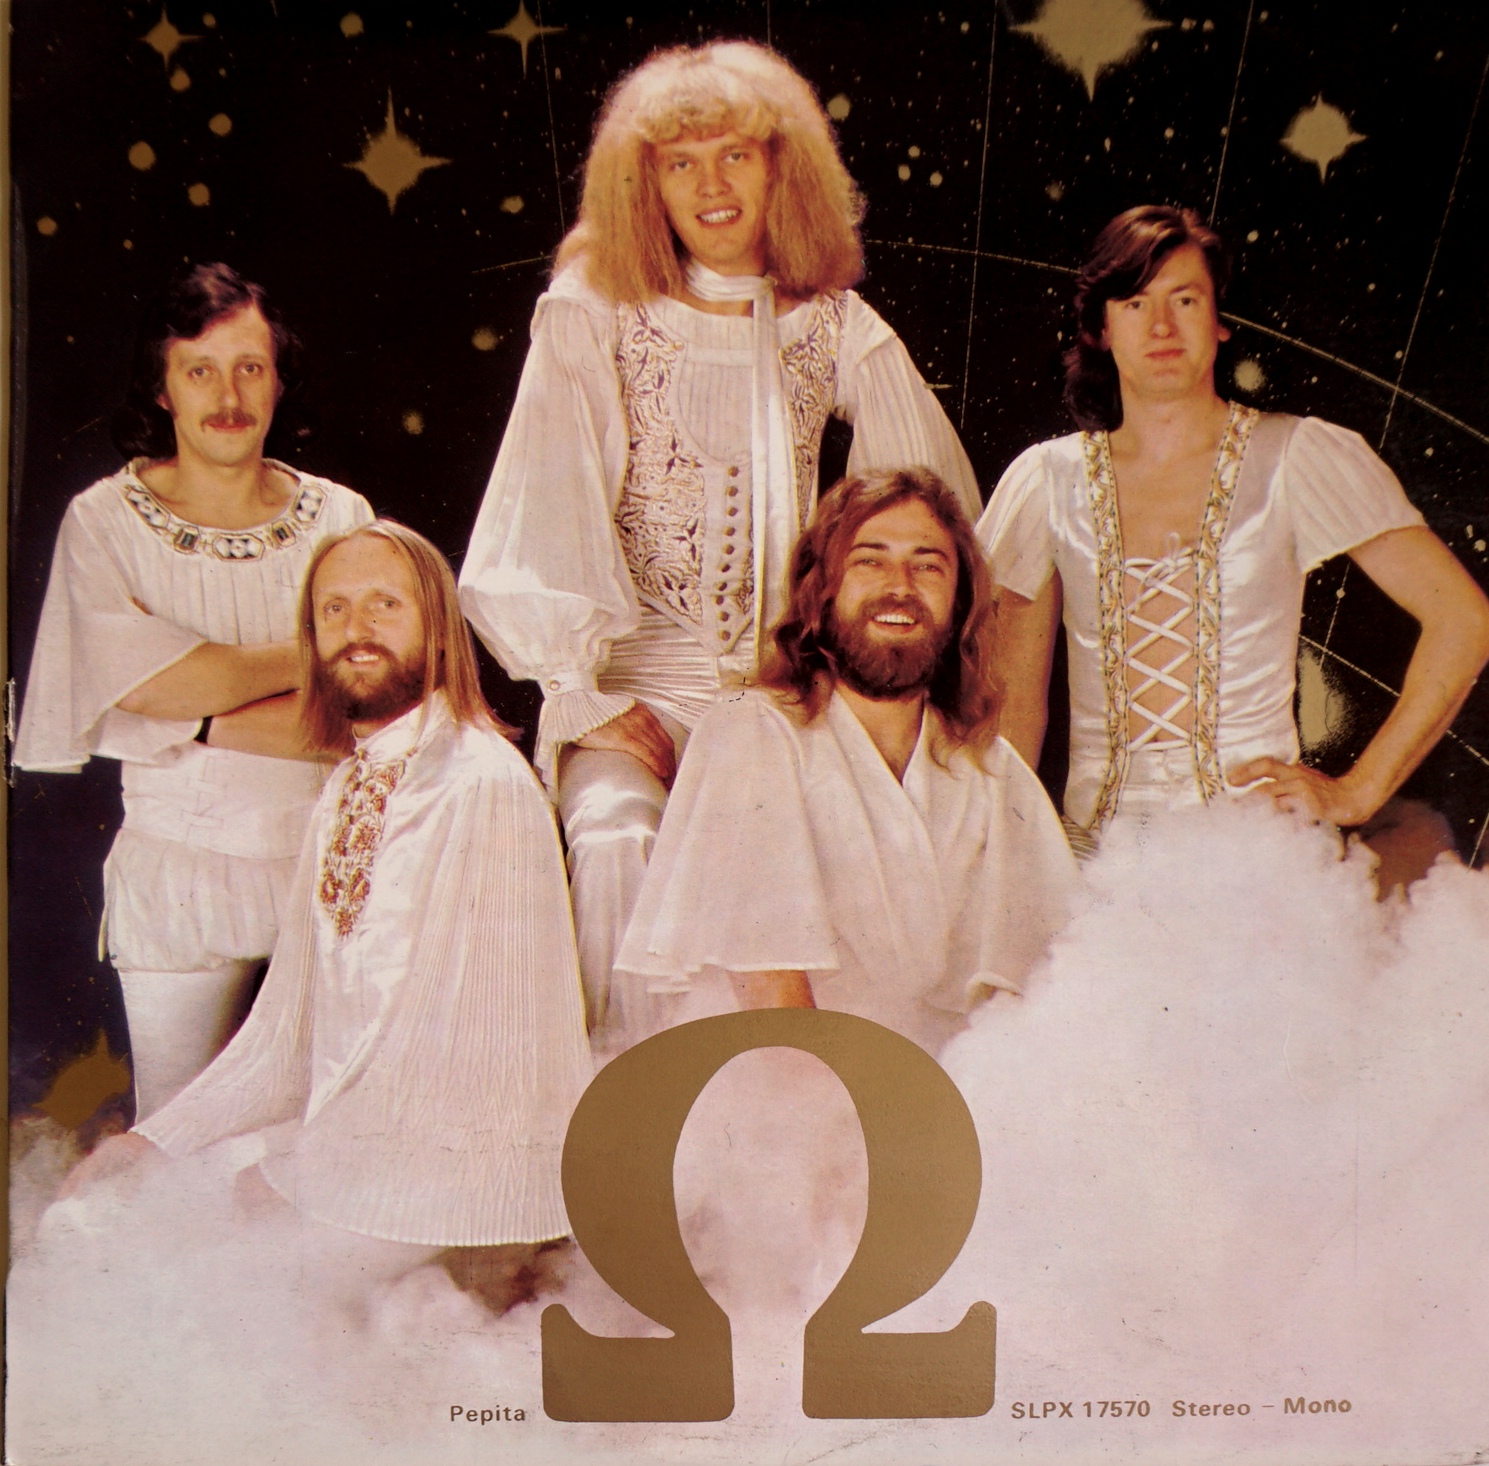 Omega – Omega 8 [Vinyl LP] (VG/VG)